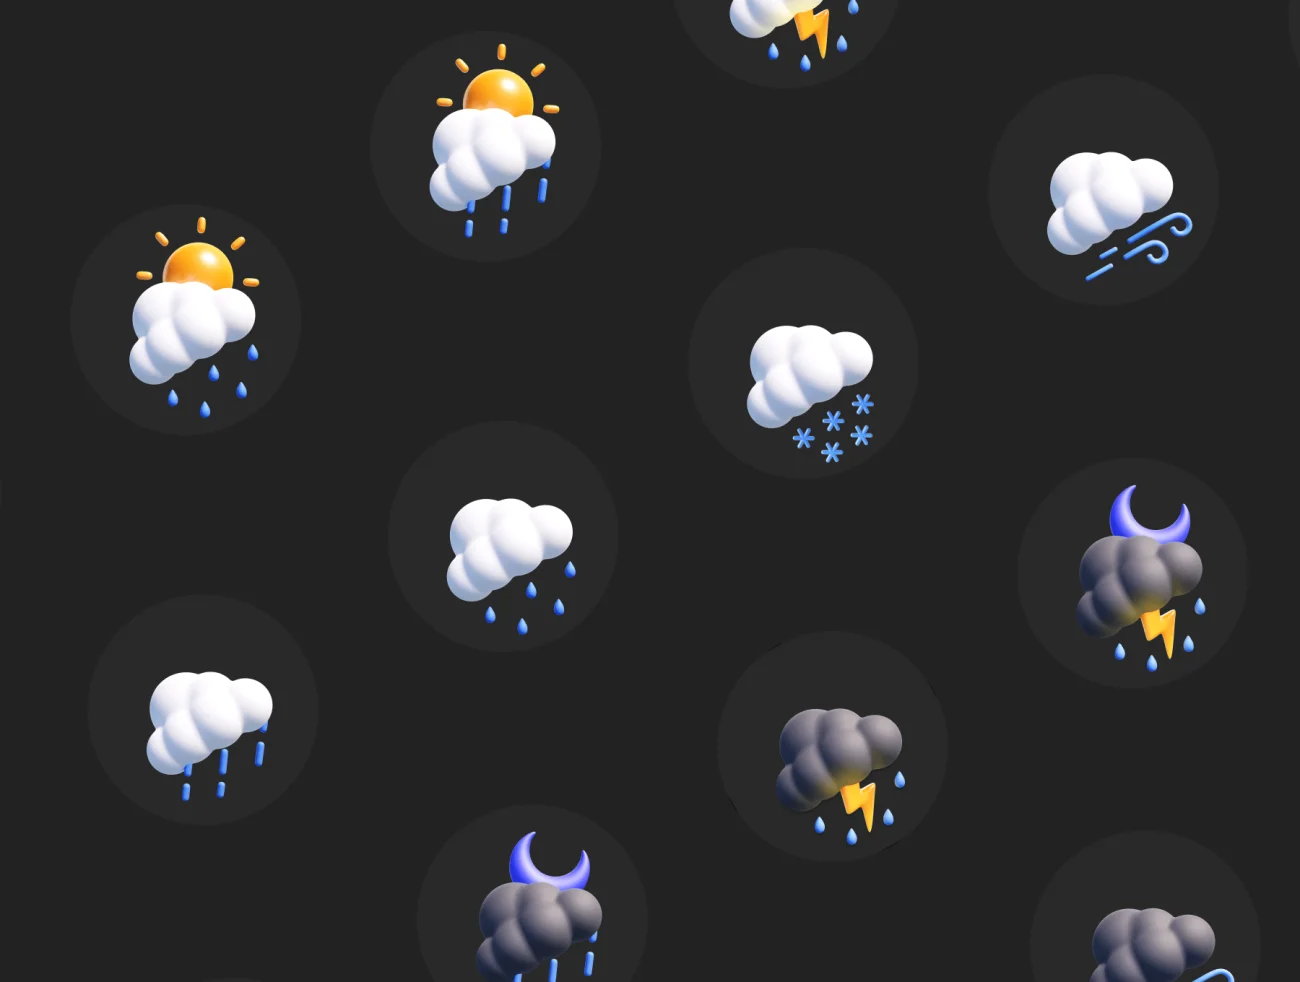 可爱天气图标3D模型60款 Weather 3D Icon Pack .blender .figma .png-3D/图标-到位啦UI